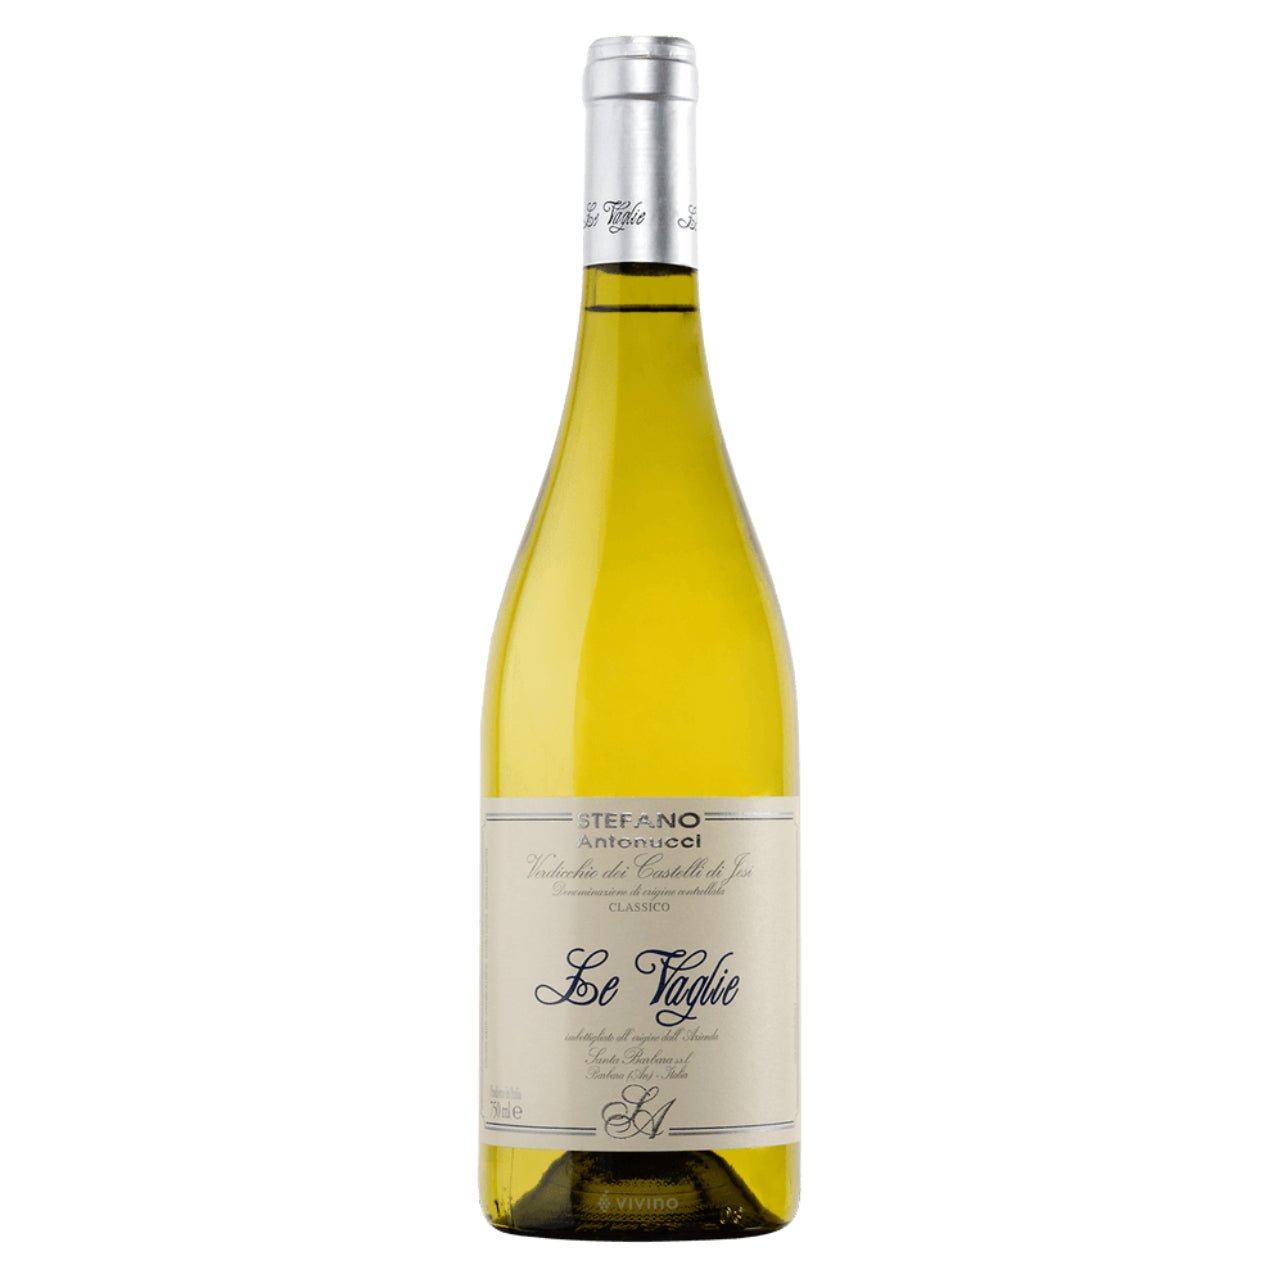 Santa Barbara Stefano Antonucci 'Le Vaglie' Verdicchio dei Castelli di Jesi Classico 2021 - Wine Italy White - Liquor Wine Cave